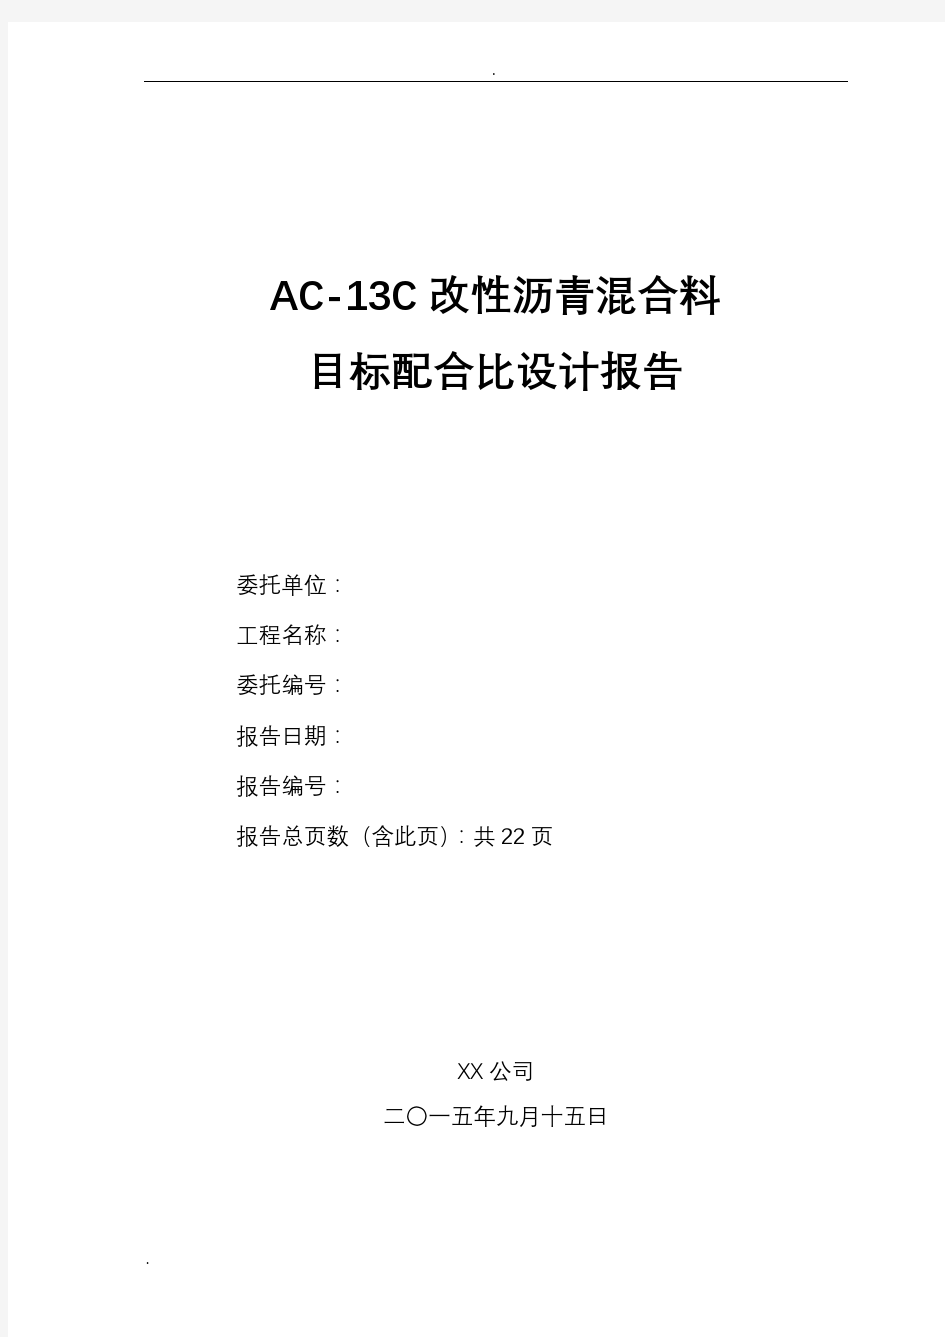 AC-13C改性沥青配比设计说明